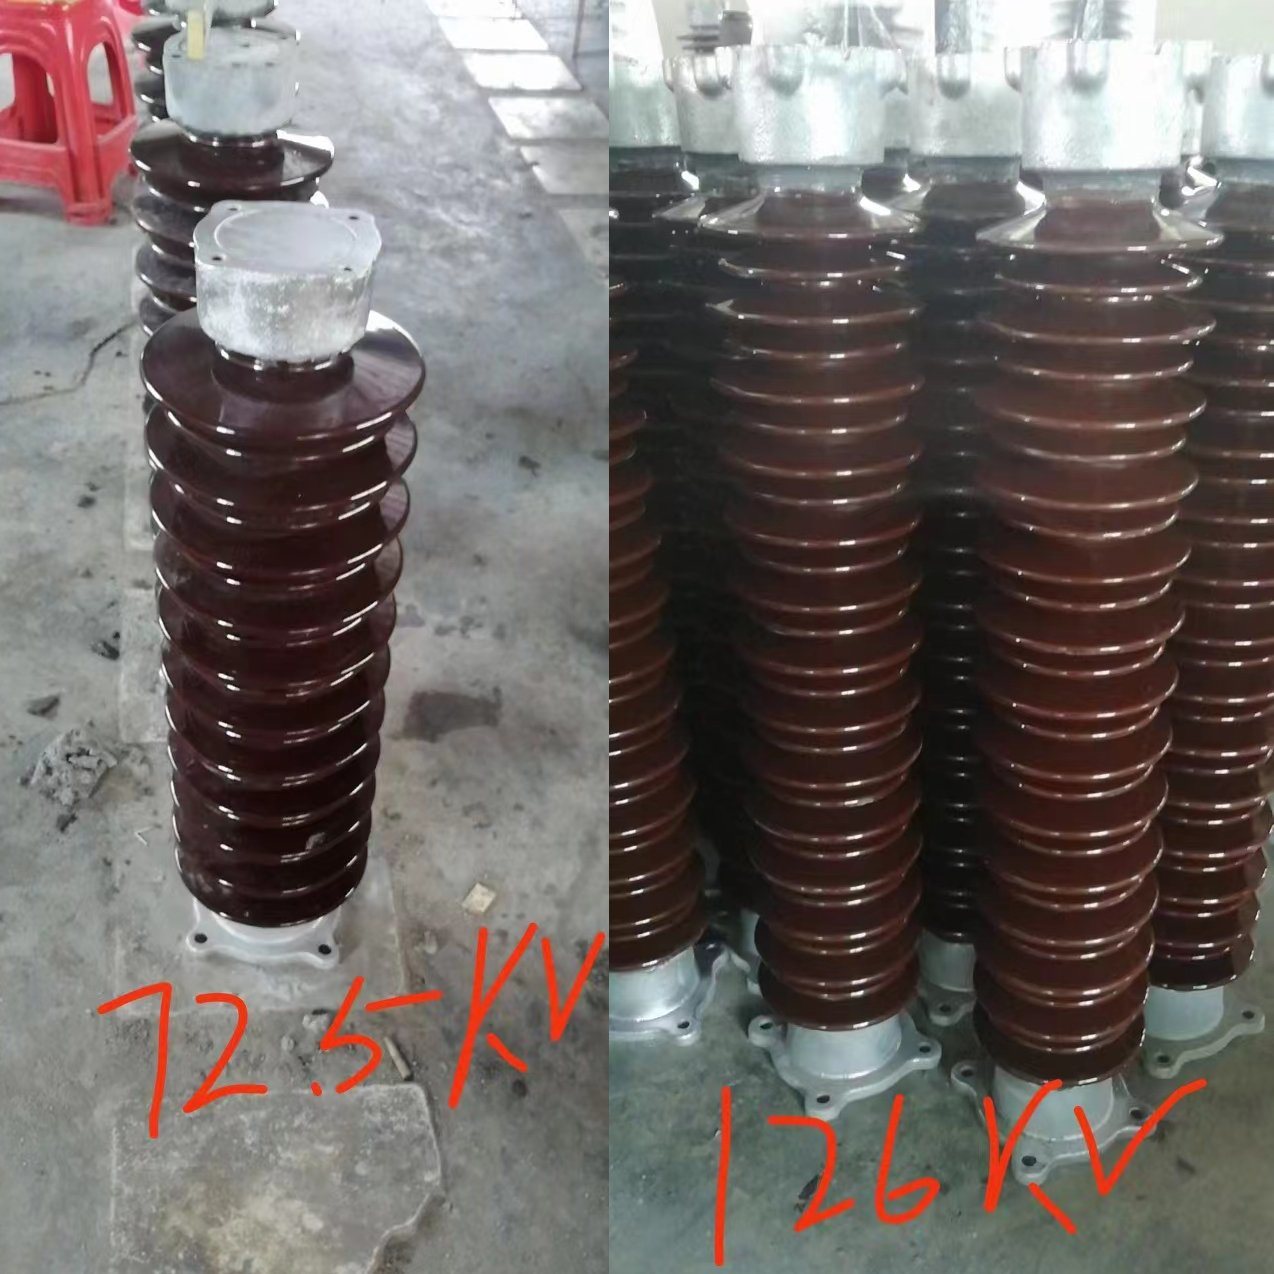 126-145kv Anti-Pollution Type Solid-Core Post Insulators